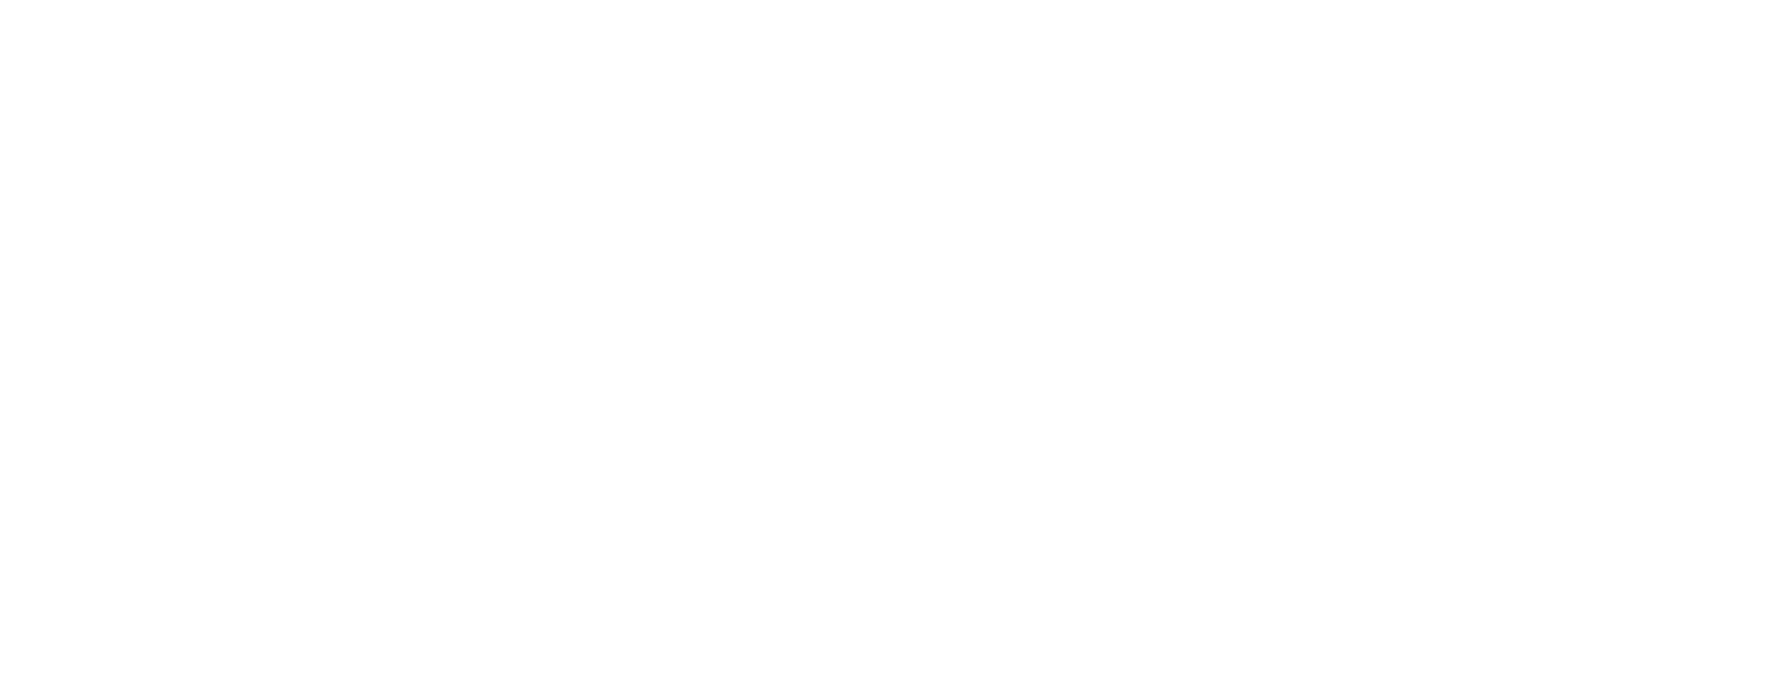 Whiskey Logo - The Story Dead Rabbit Irish Whiskey